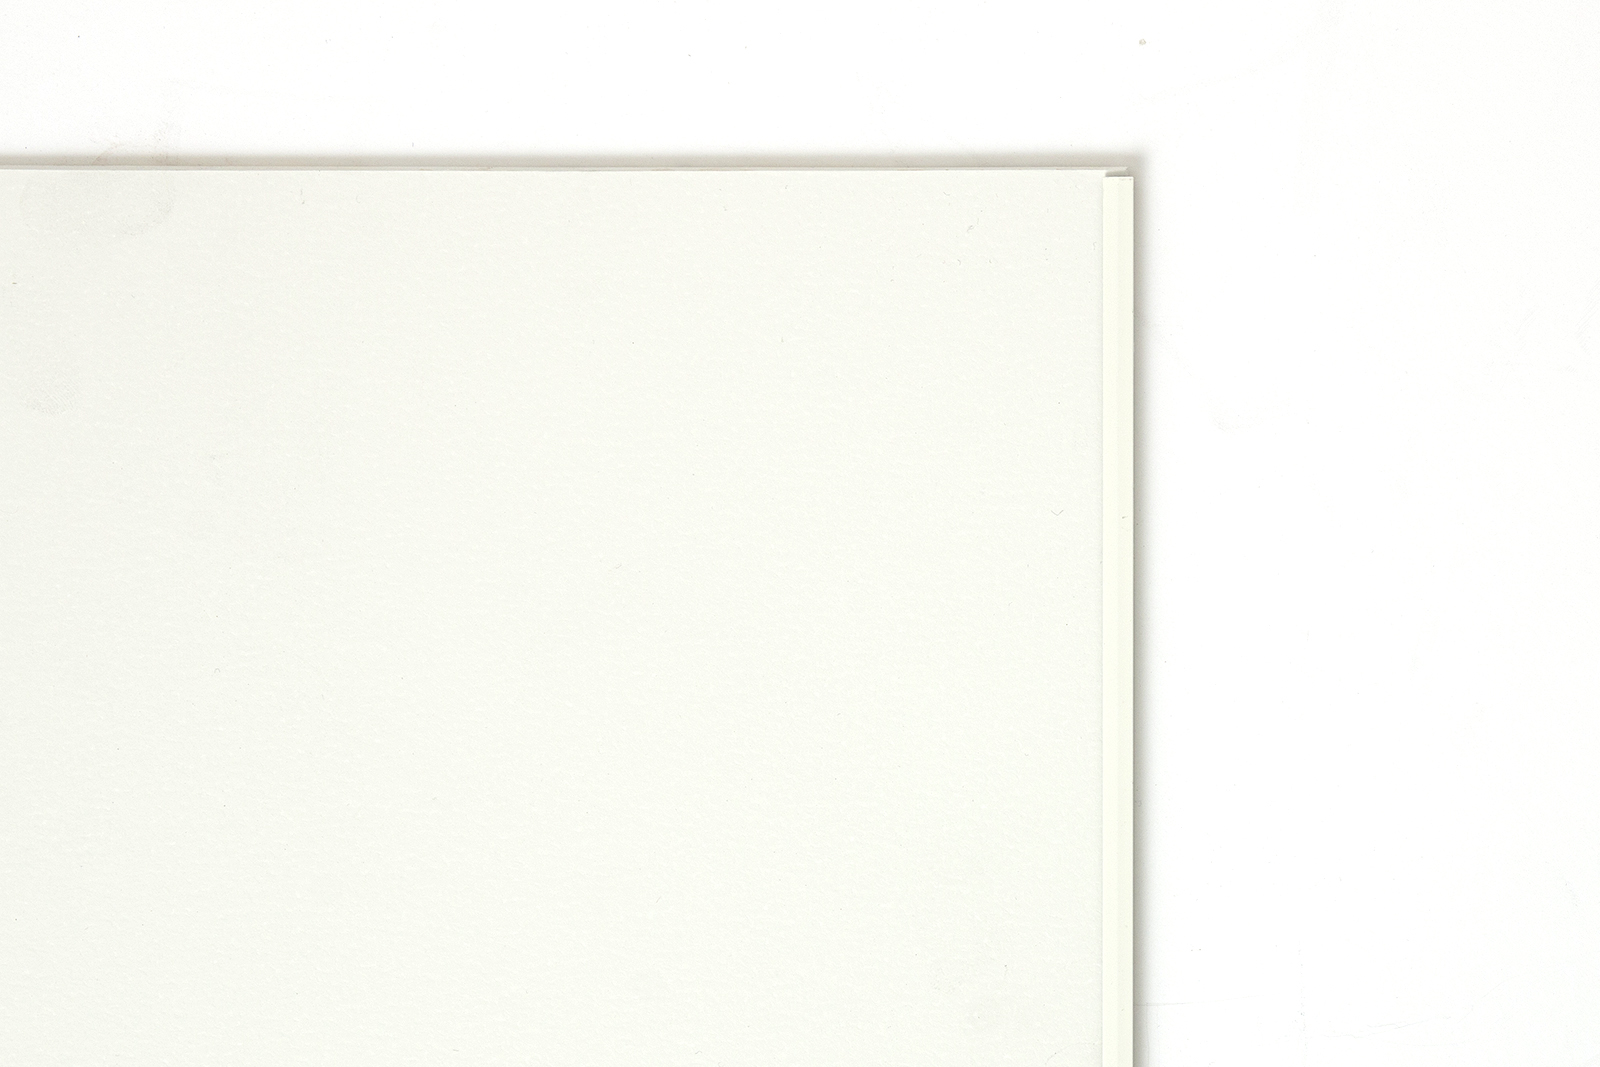 塗装のキッチンパネル 見切材 マットホワイト KB-OT001-03-G248 パネルに見切材を合わせた状態